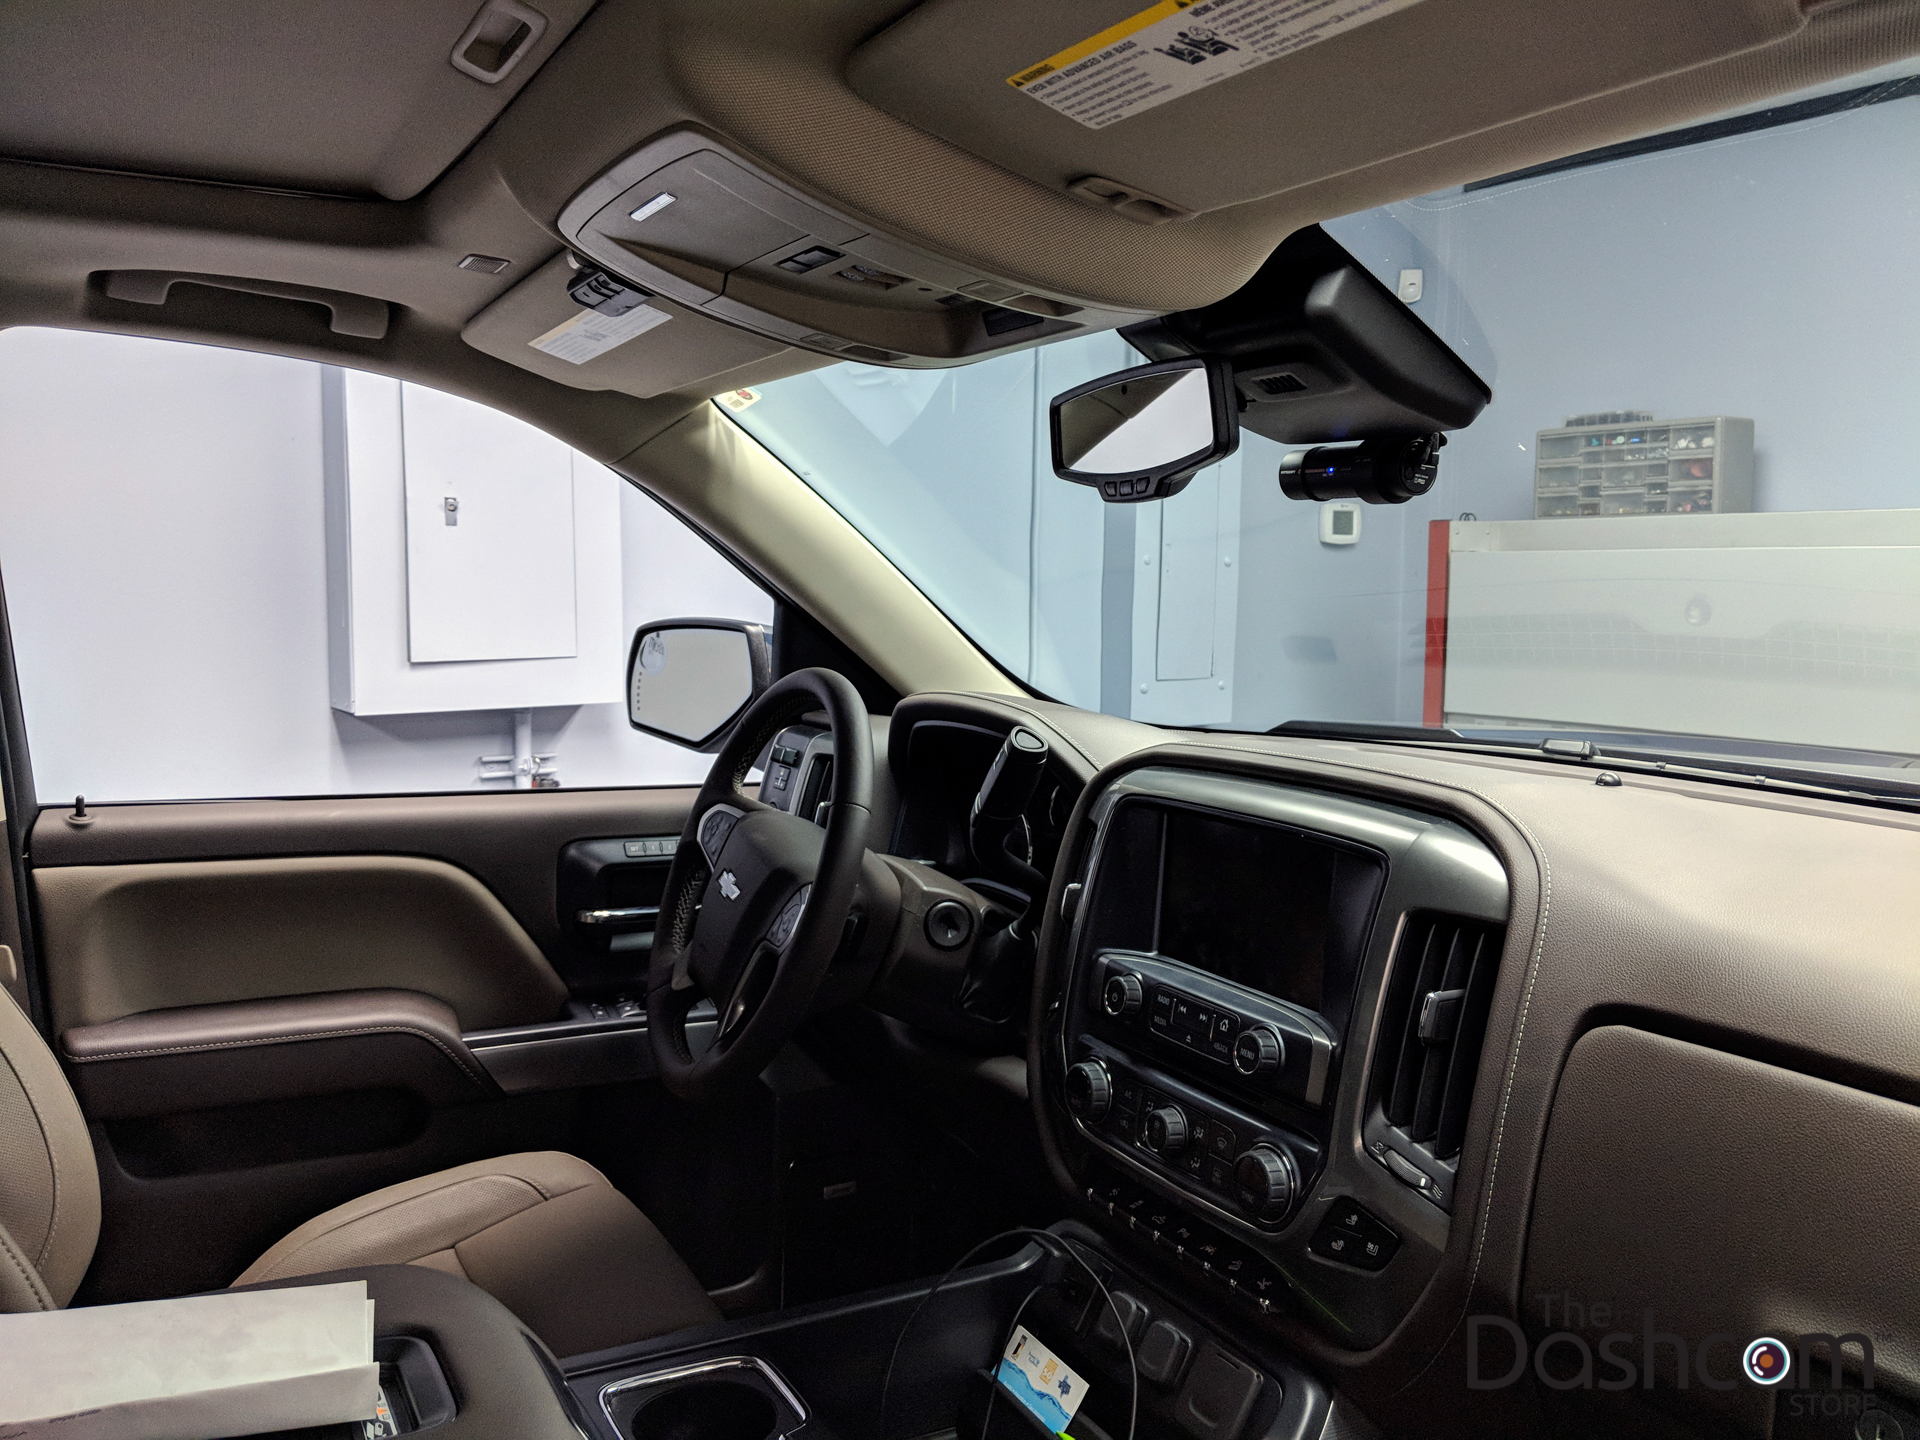 Blackvue DR900S-2CH Dashcam Installed in a 2018 Chevy Silverado